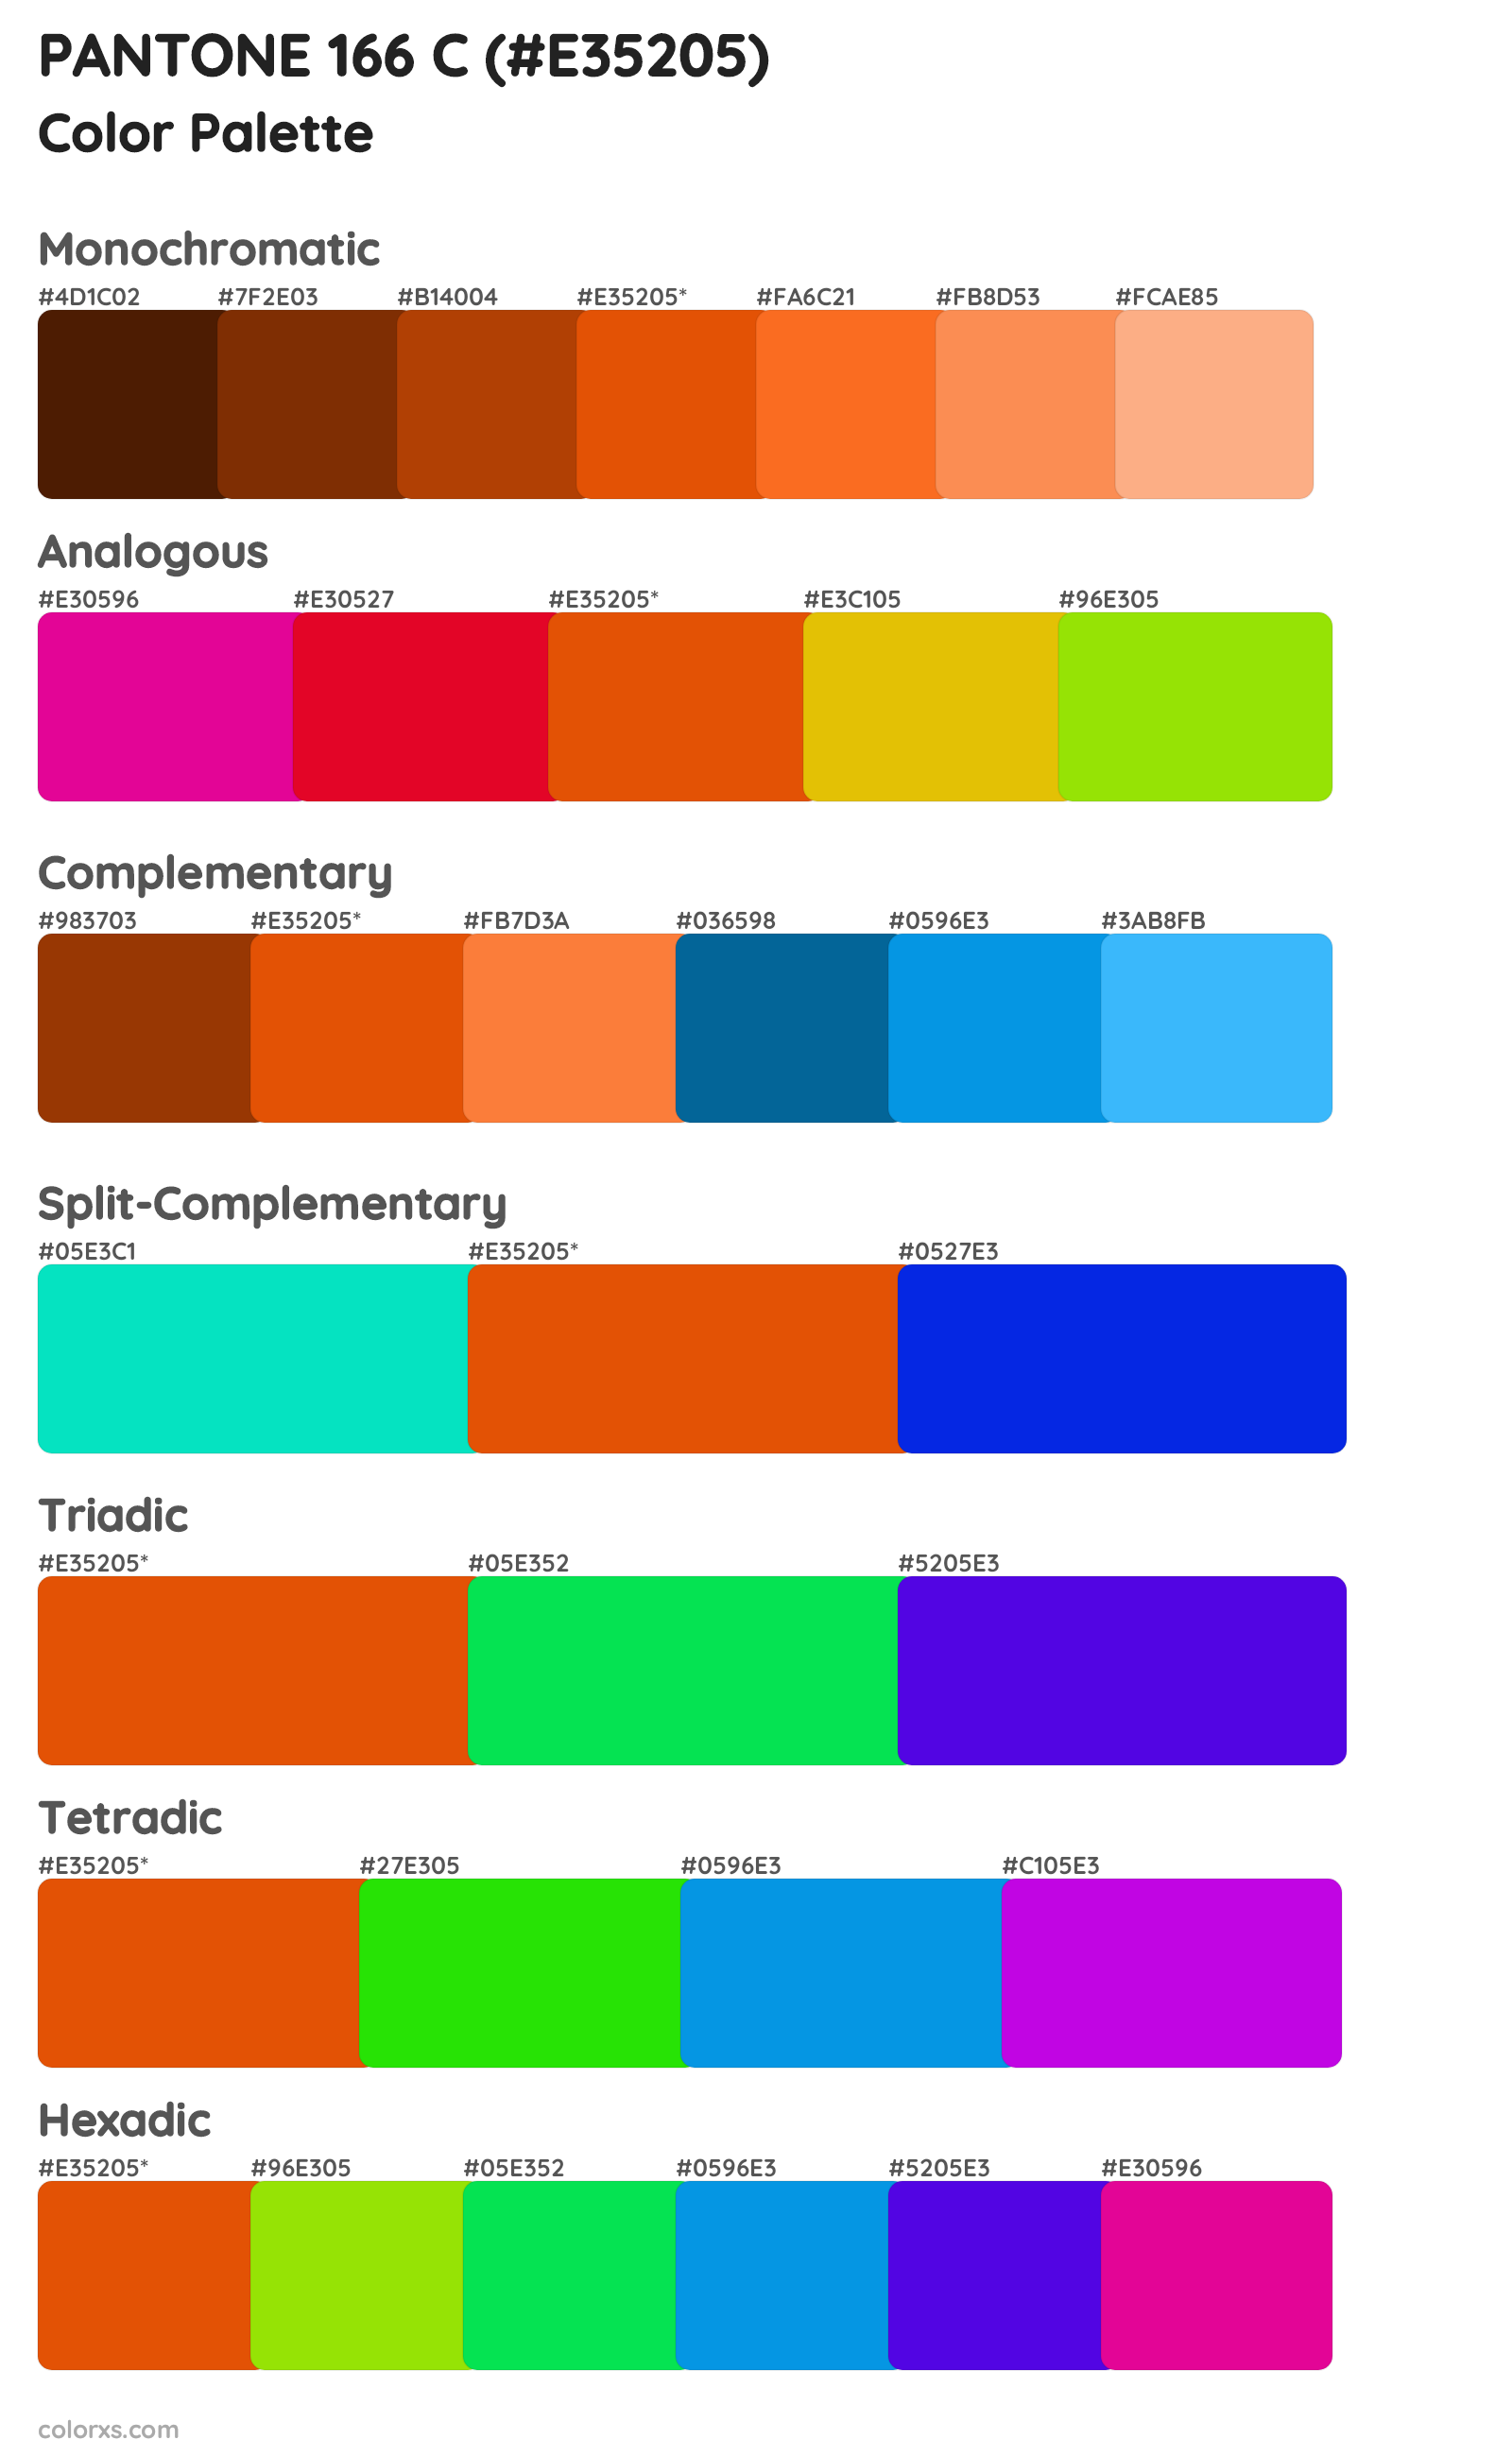 PANTONE 166 C Color Scheme Palettes